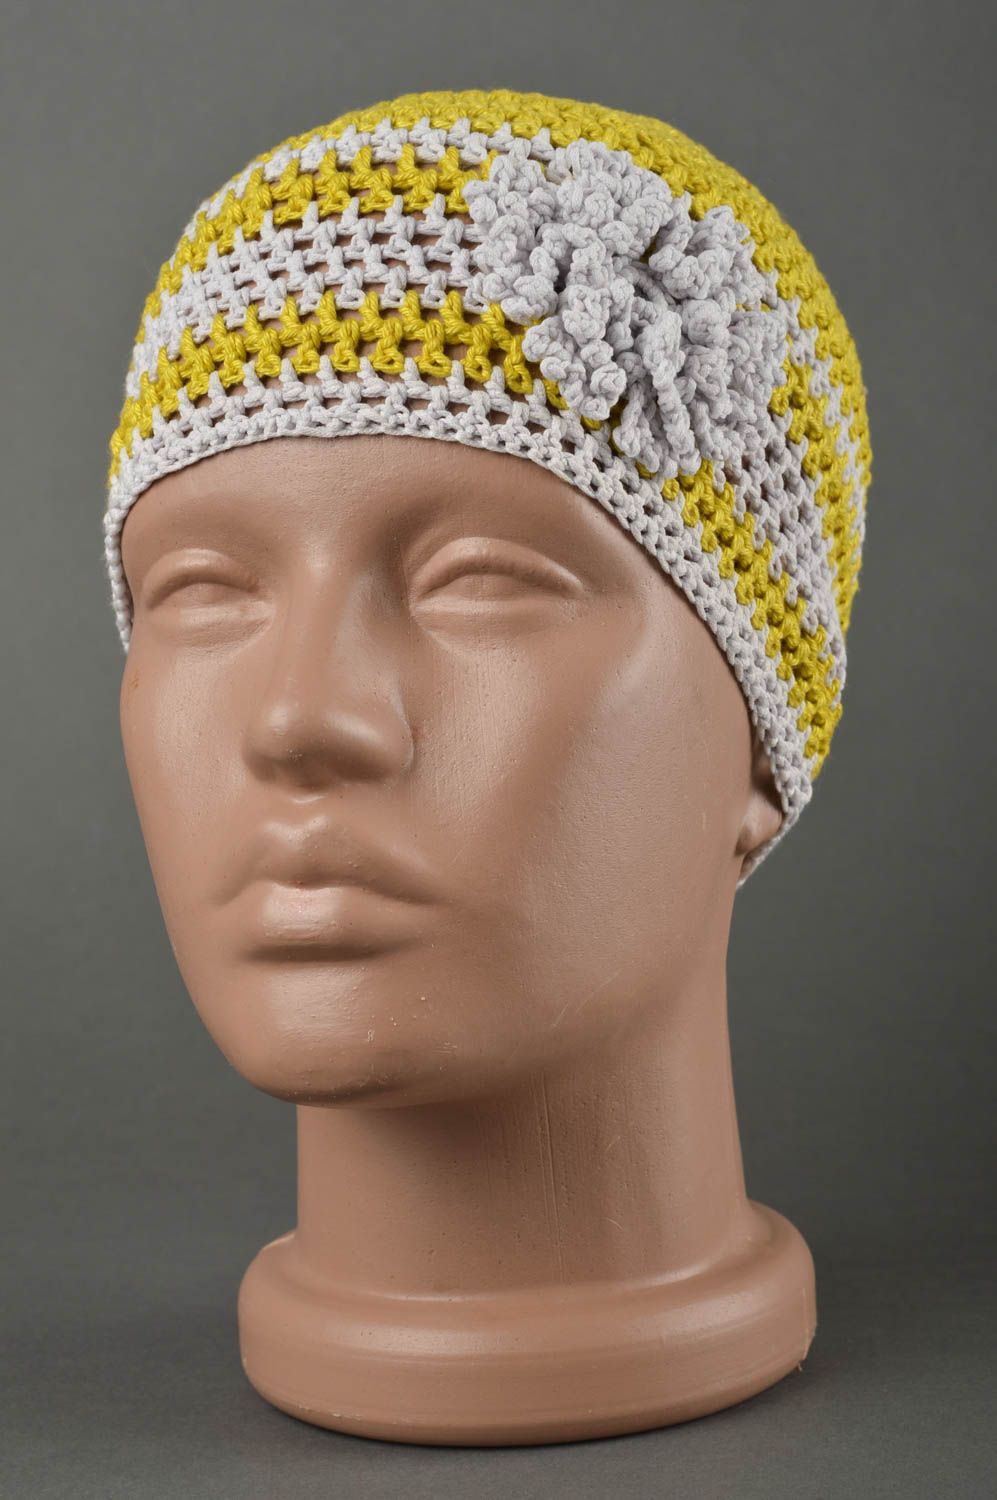 Вязаная шапка для детей хэндмэйд шапочка на девочку весенняя шапка желто-белая фото 1